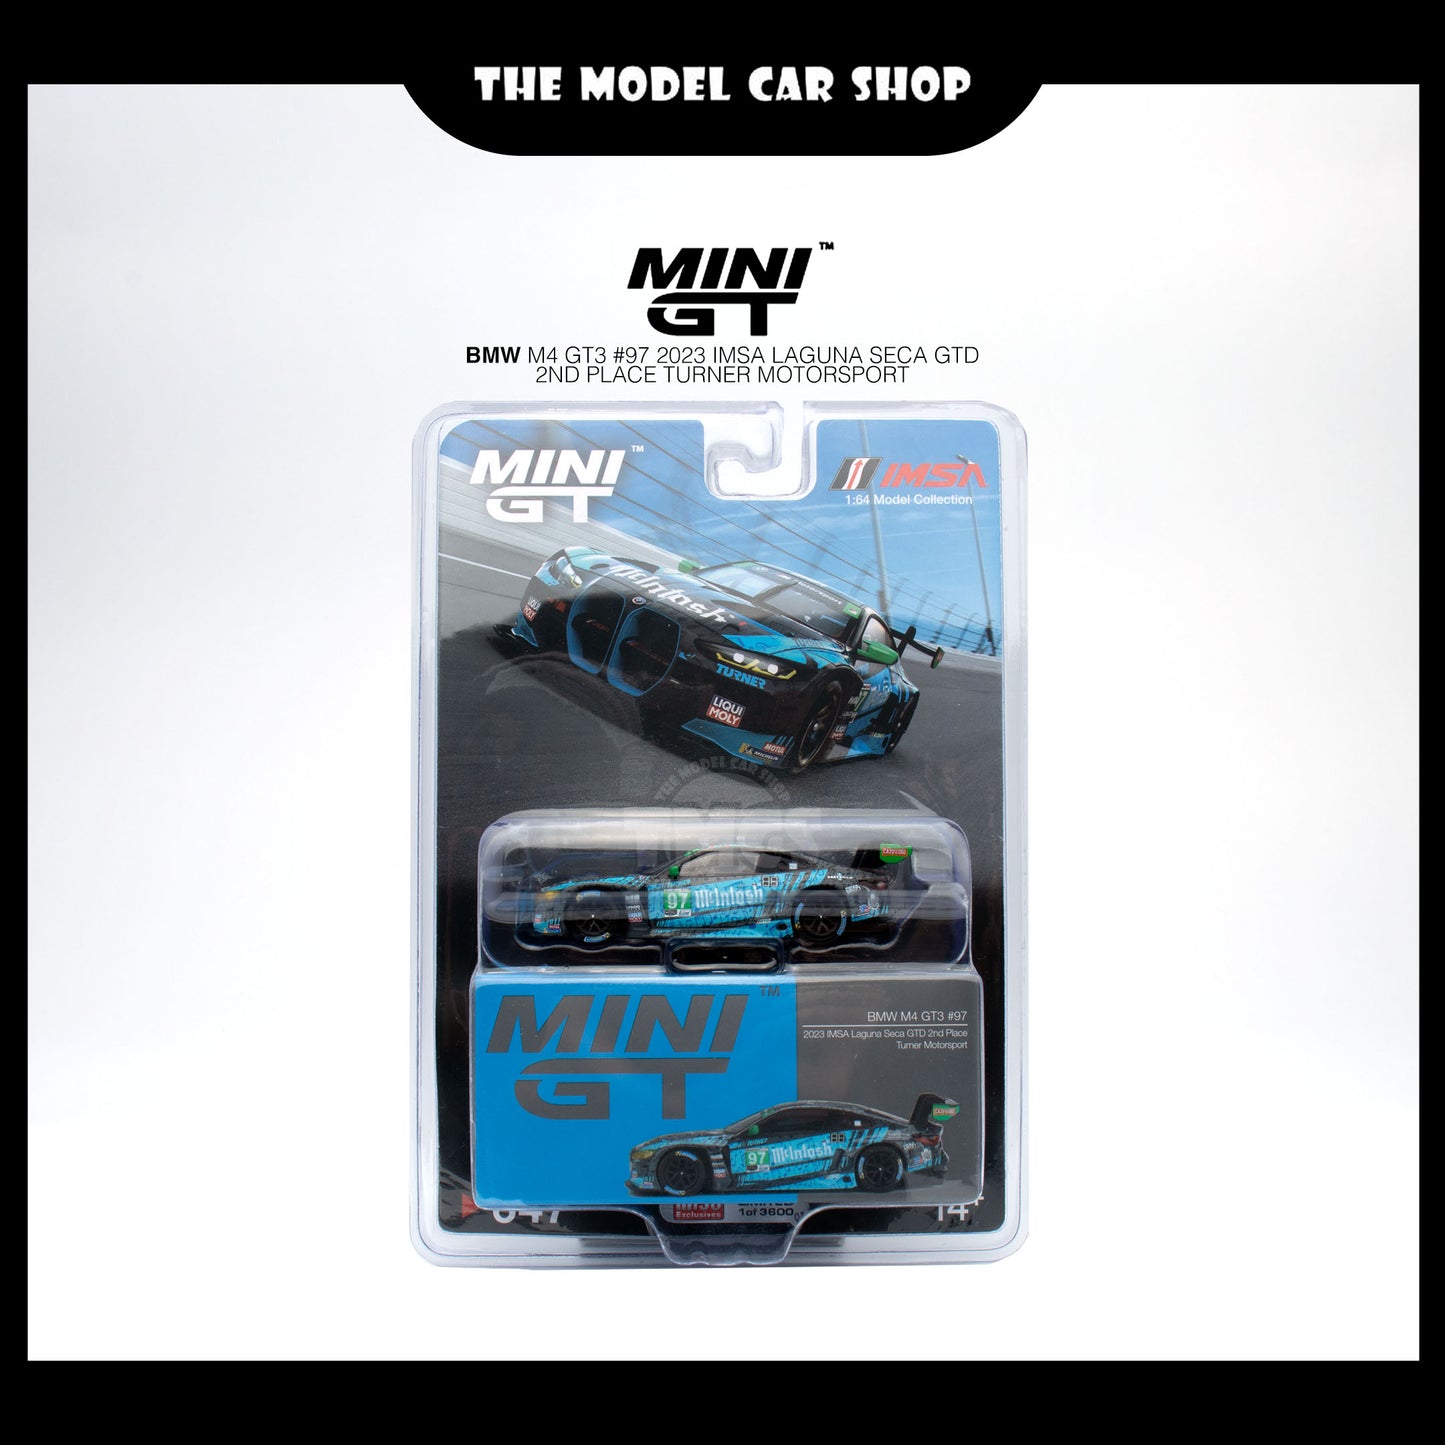 [MINI GT] BMW M4 GT3 #97 Turner Motorsport IMSA 2023 Laguna Seca GTD 2nd Place (Mijo Exclusive)